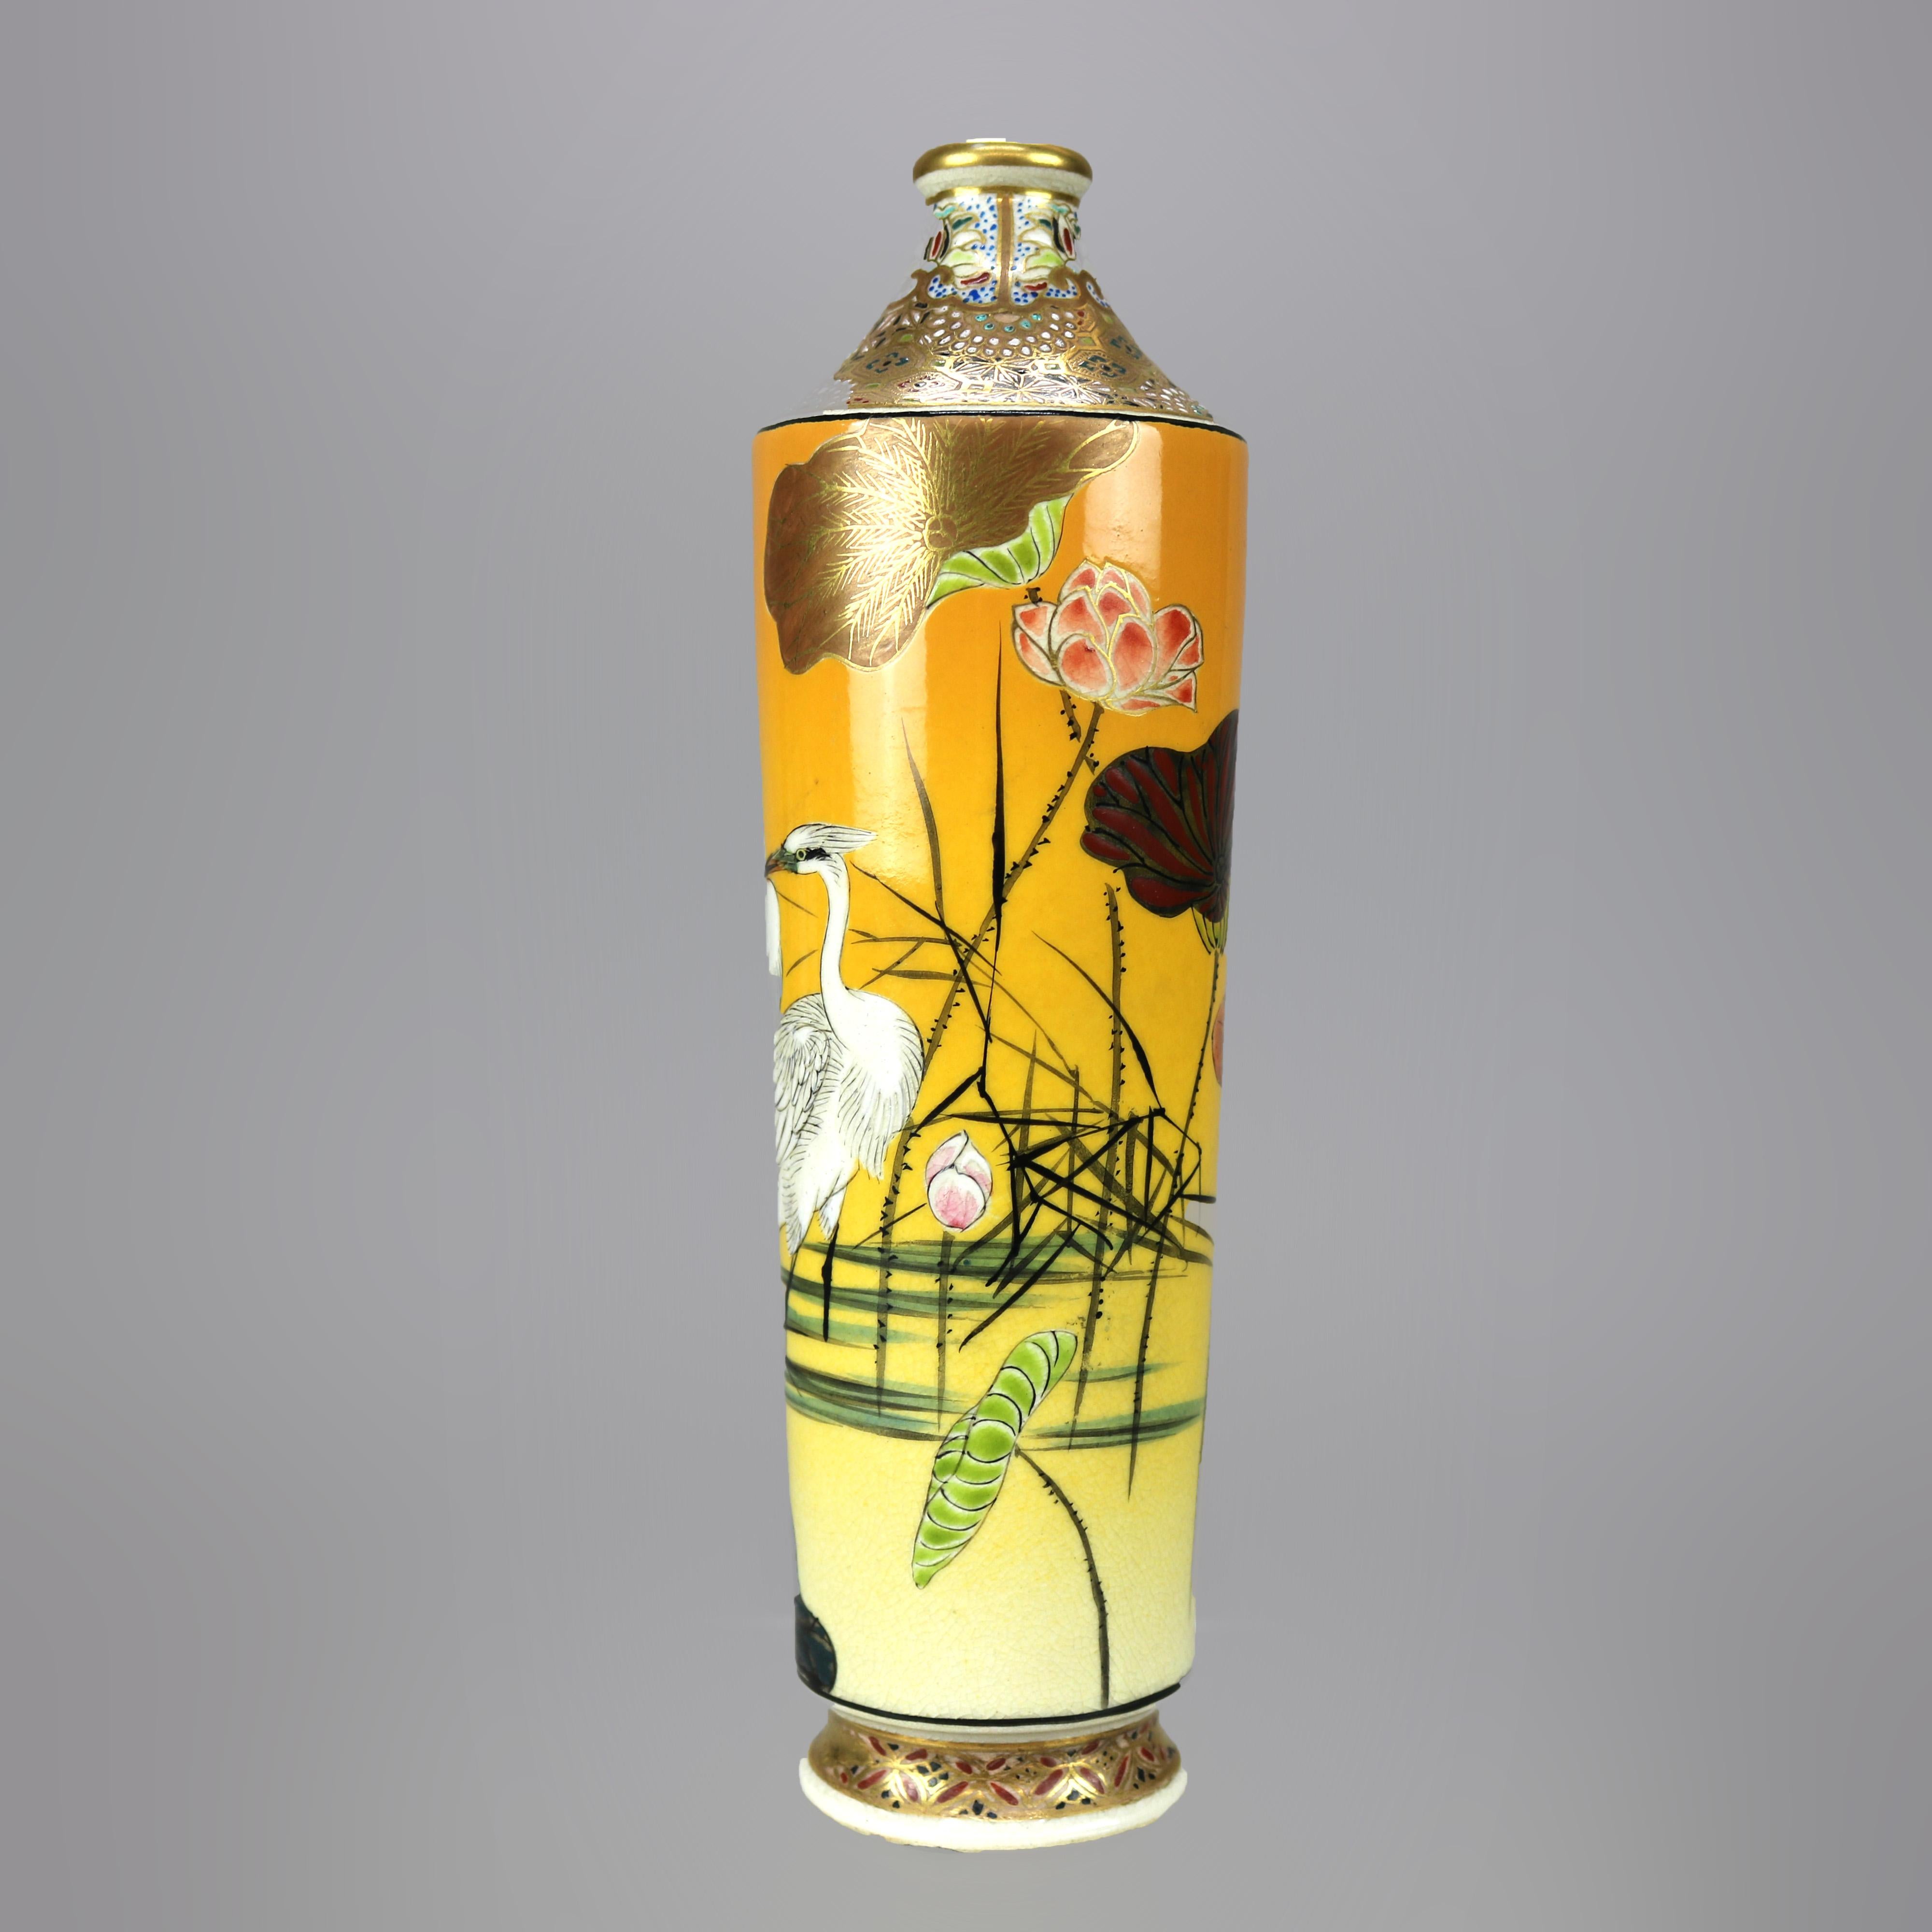 Gilt Antique Japanese Aesthetic Meiji Porcelain Bottle Vase circa 1900